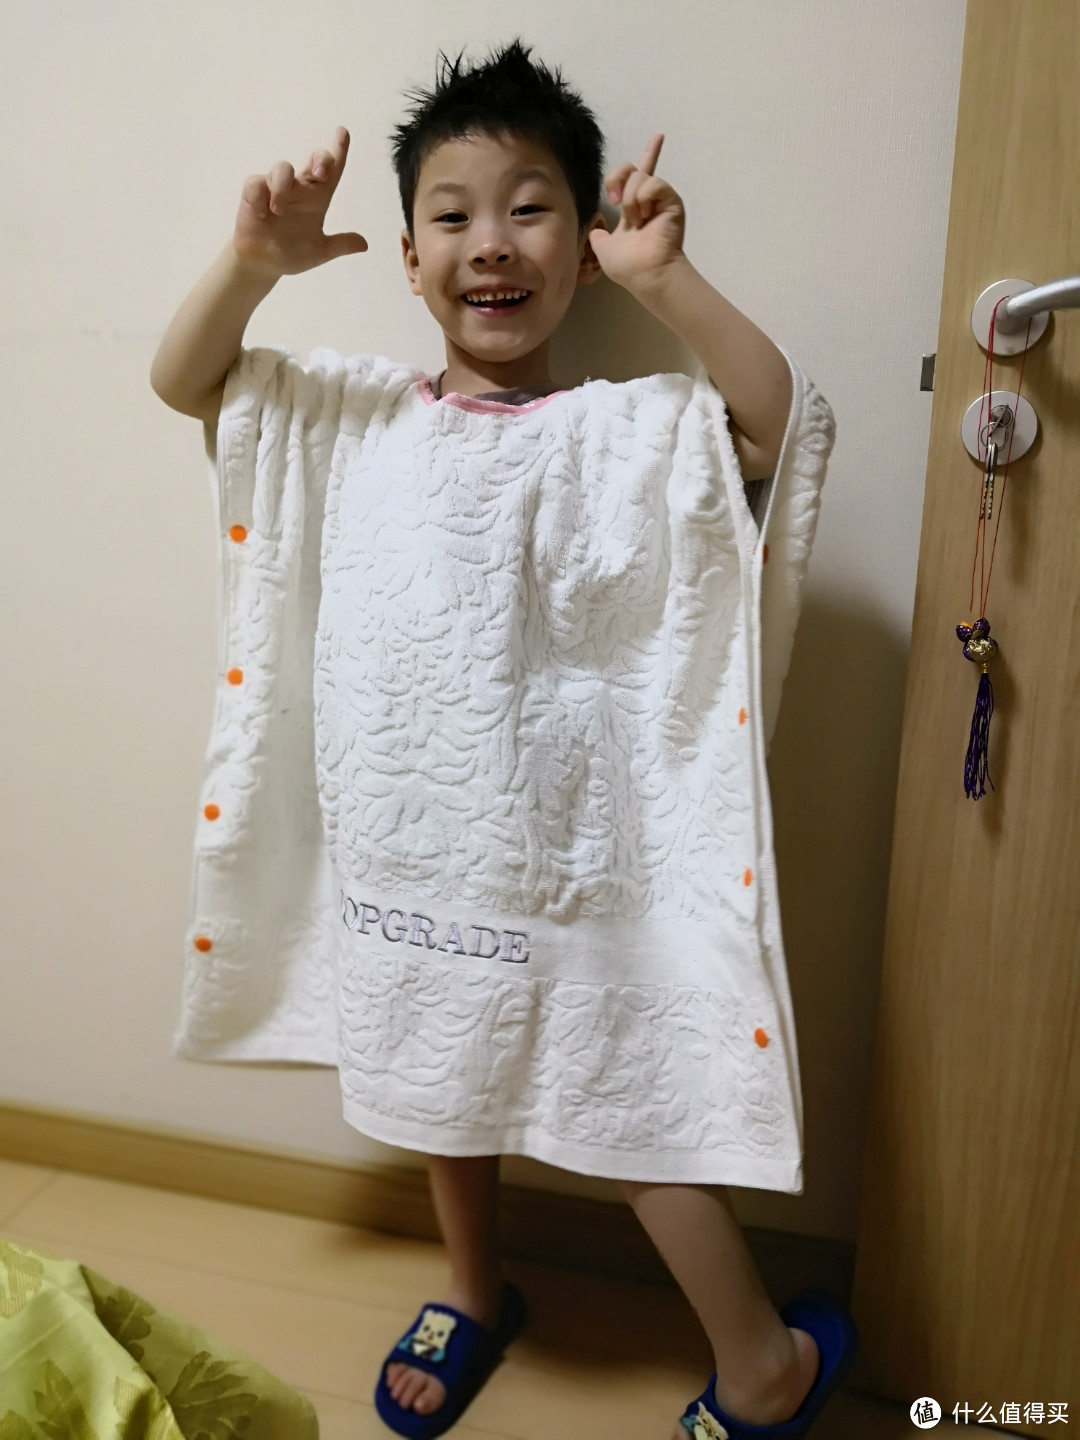 夏日戏水必备——普通1浴巾如何diy改成儿童浴袍